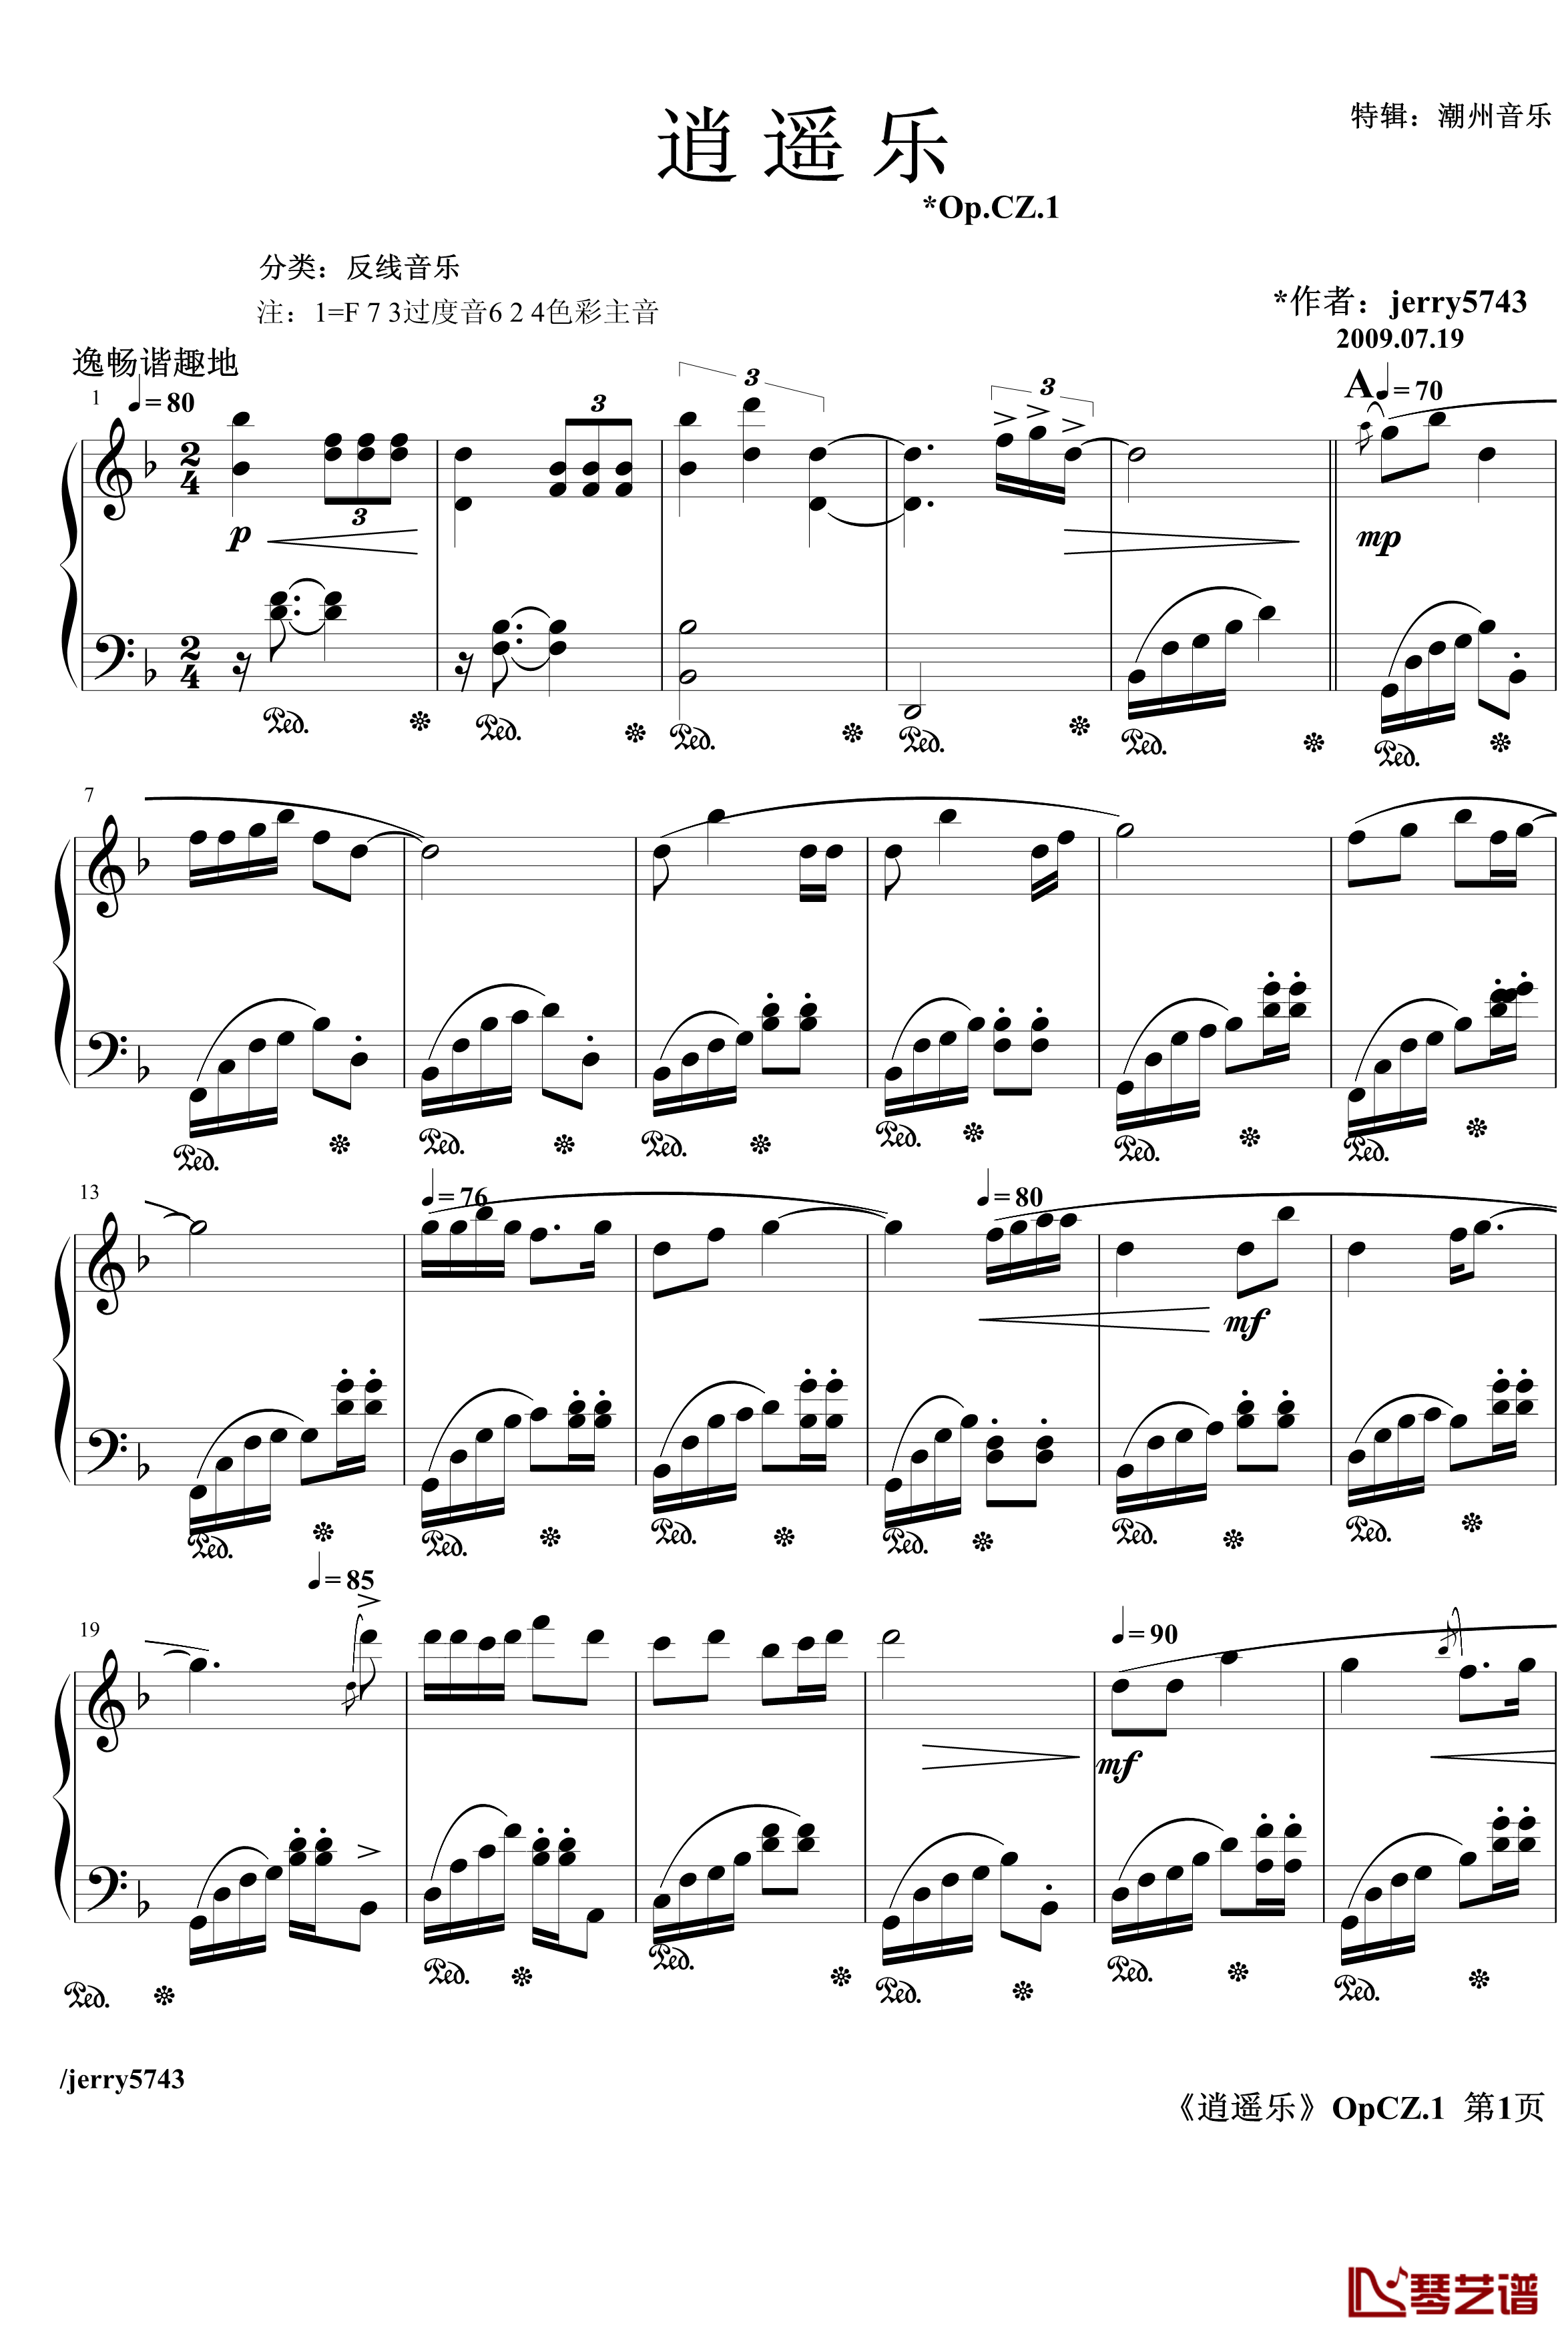 逍遥乐钢琴谱-Op.CZ.1-jerry57431